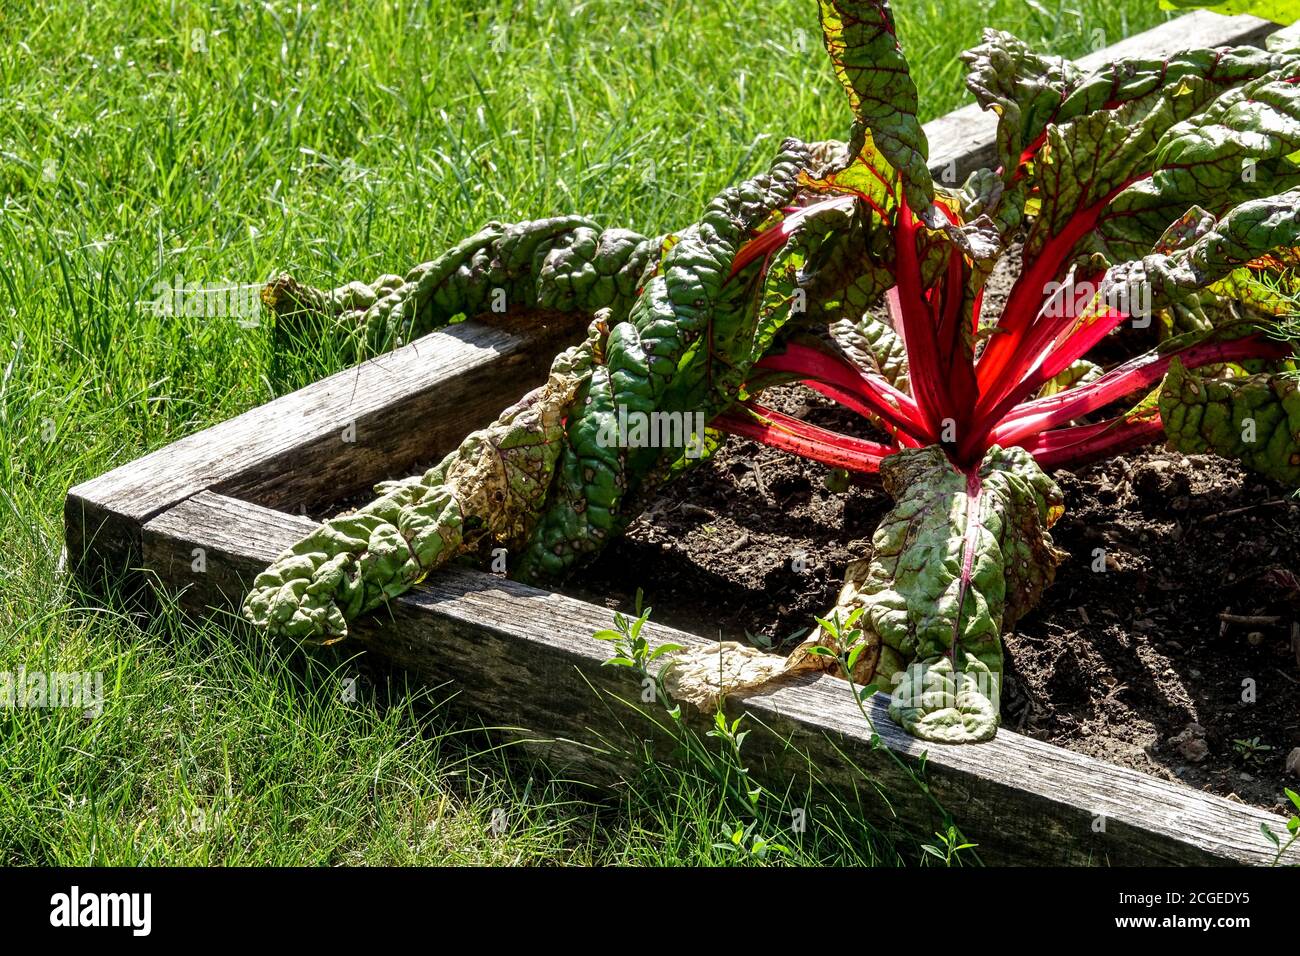 Décoloration rouge mangold dans le jardin de lit surélevé, maladie de la bette suisse dans le potager jardin potager de la bette suisse cultiver des légumes Banque D'Images